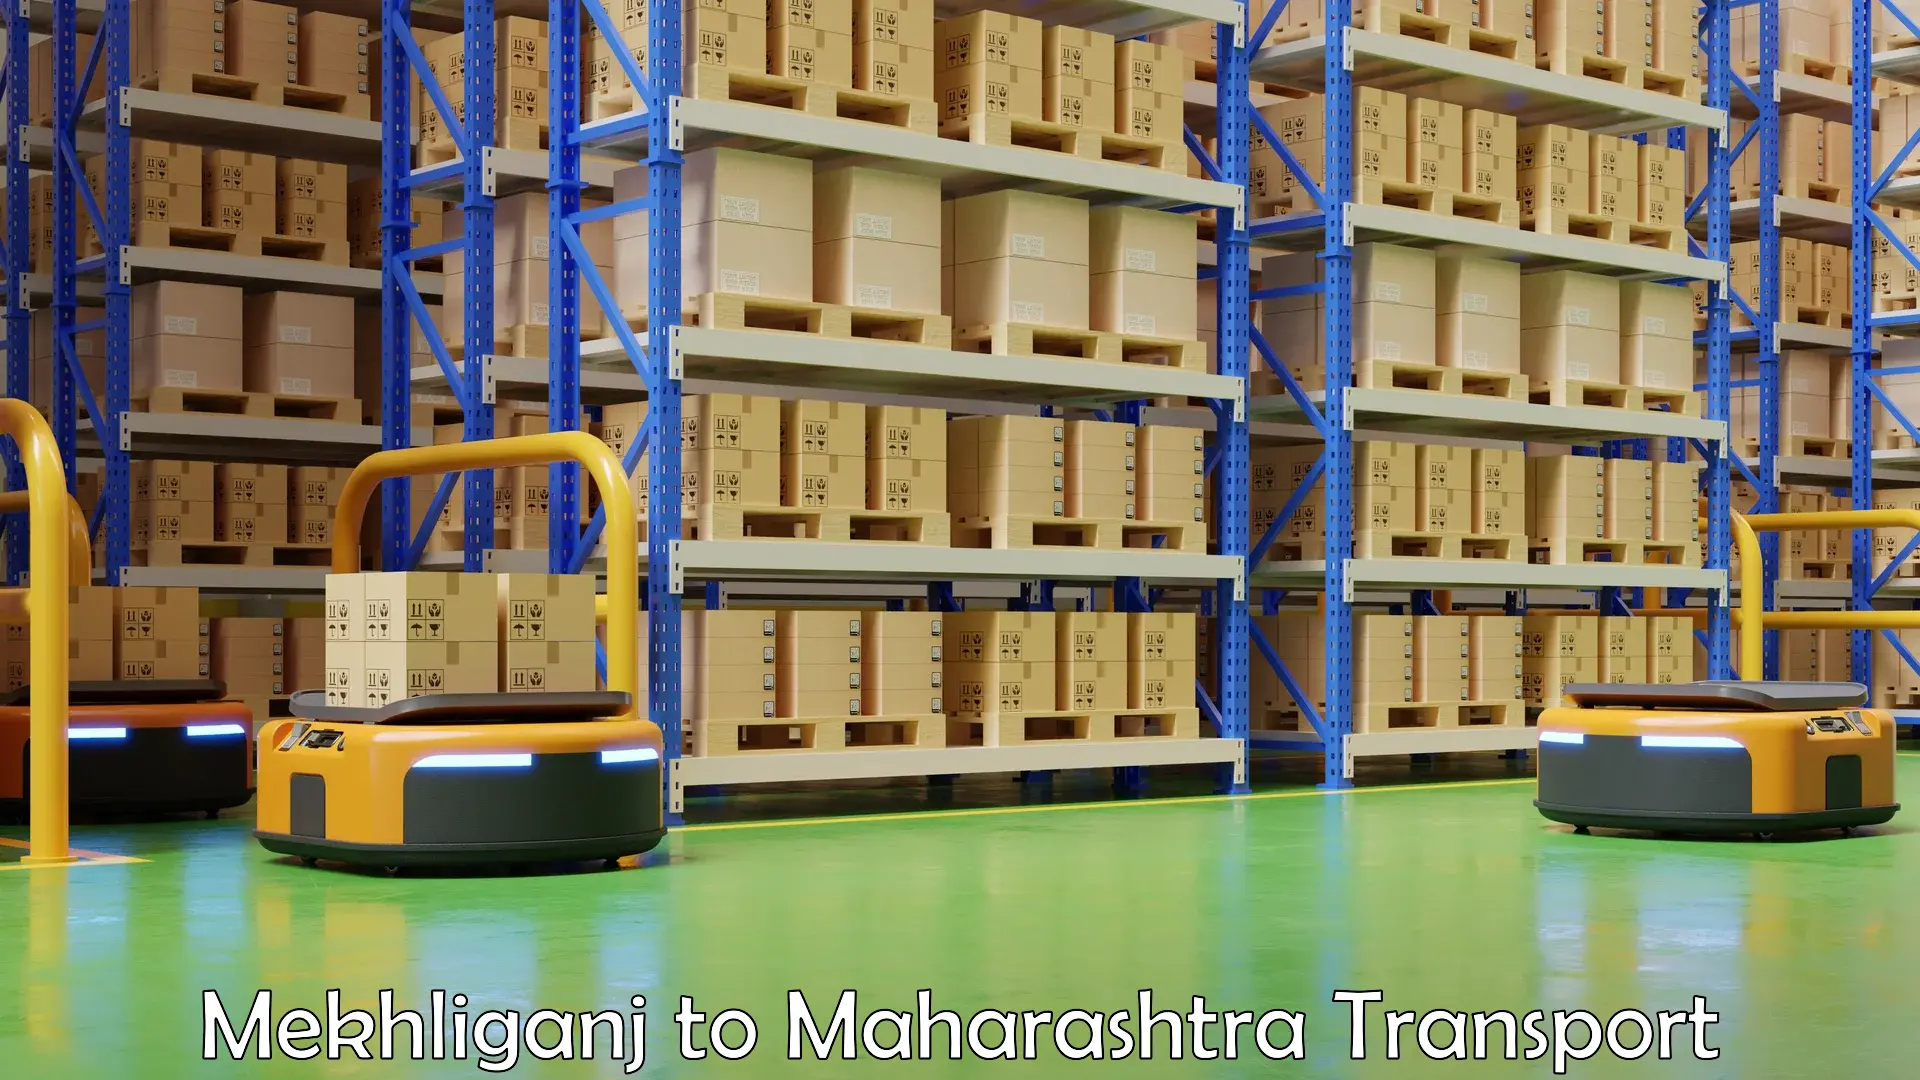 Land transport services Mekhliganj to Raigarh Maharashtra